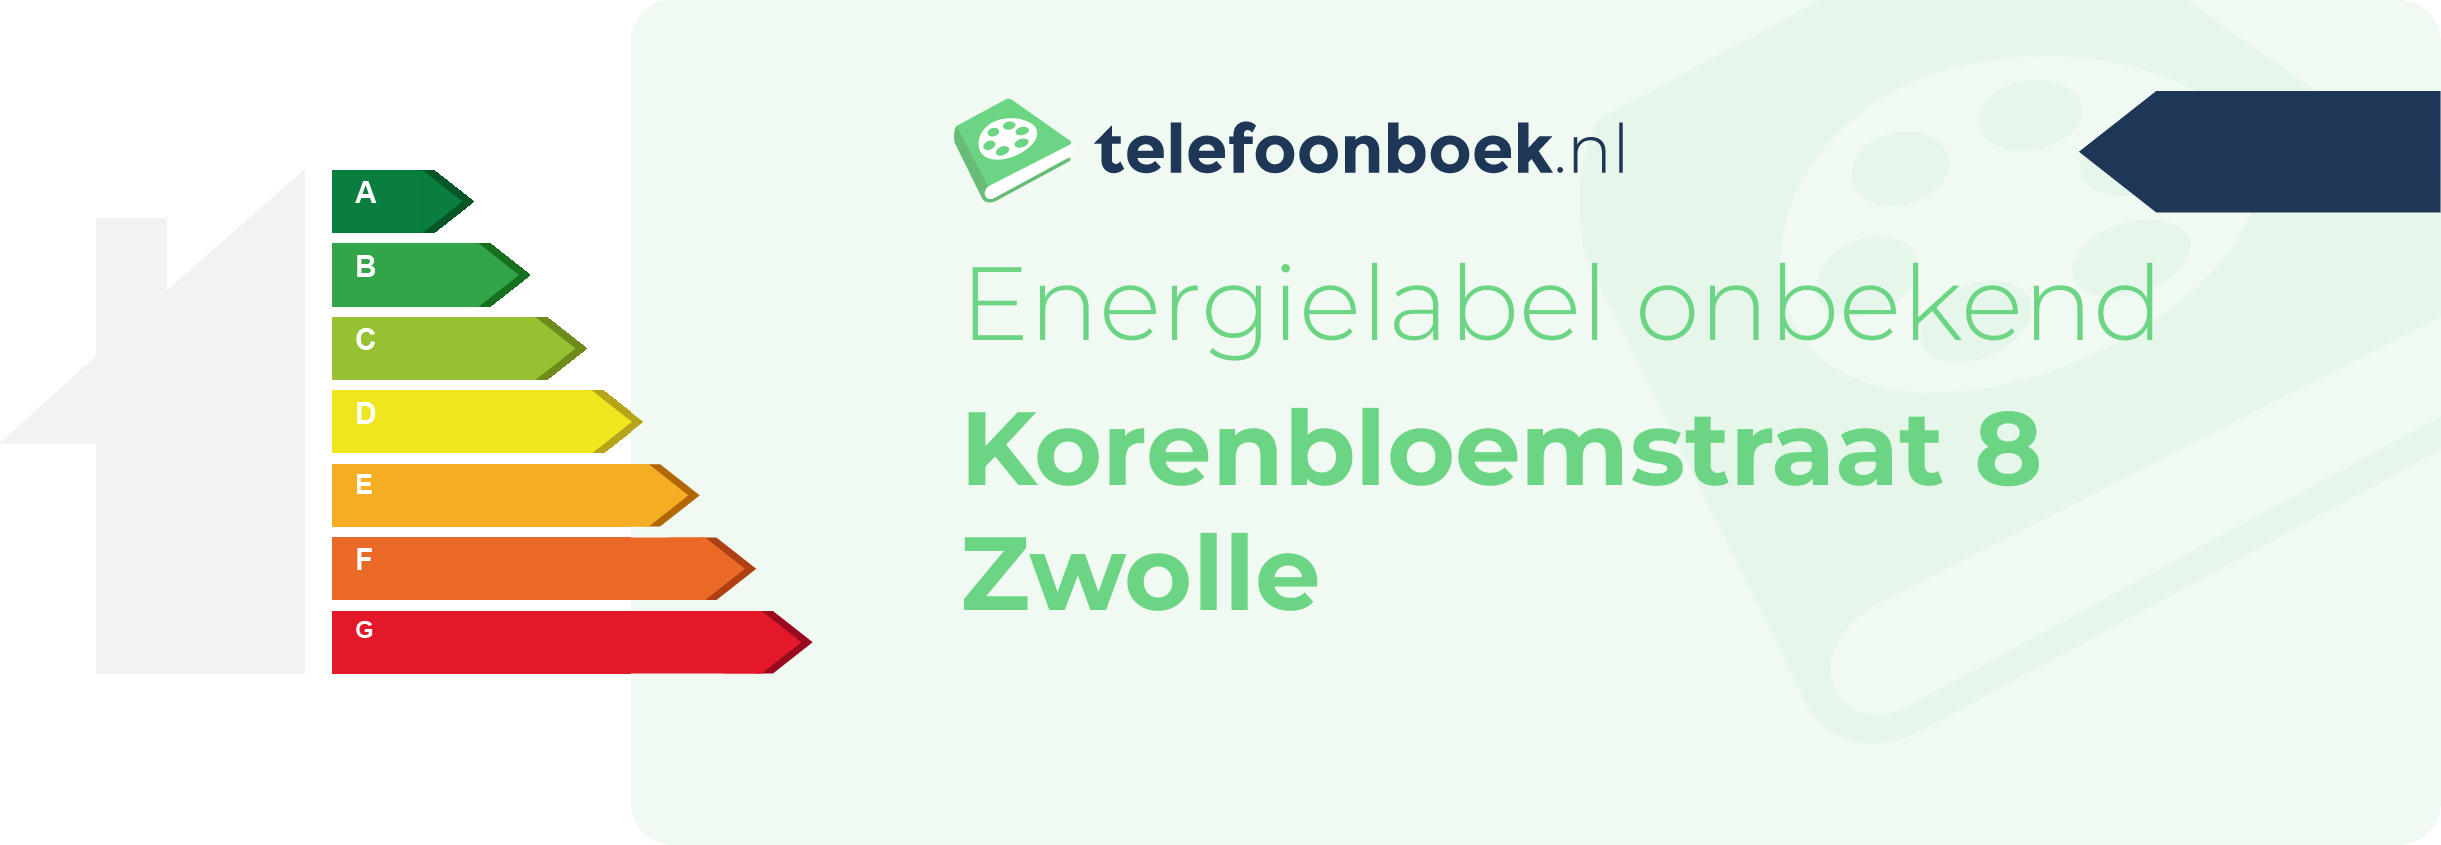 Energielabel Korenbloemstraat 8 Zwolle